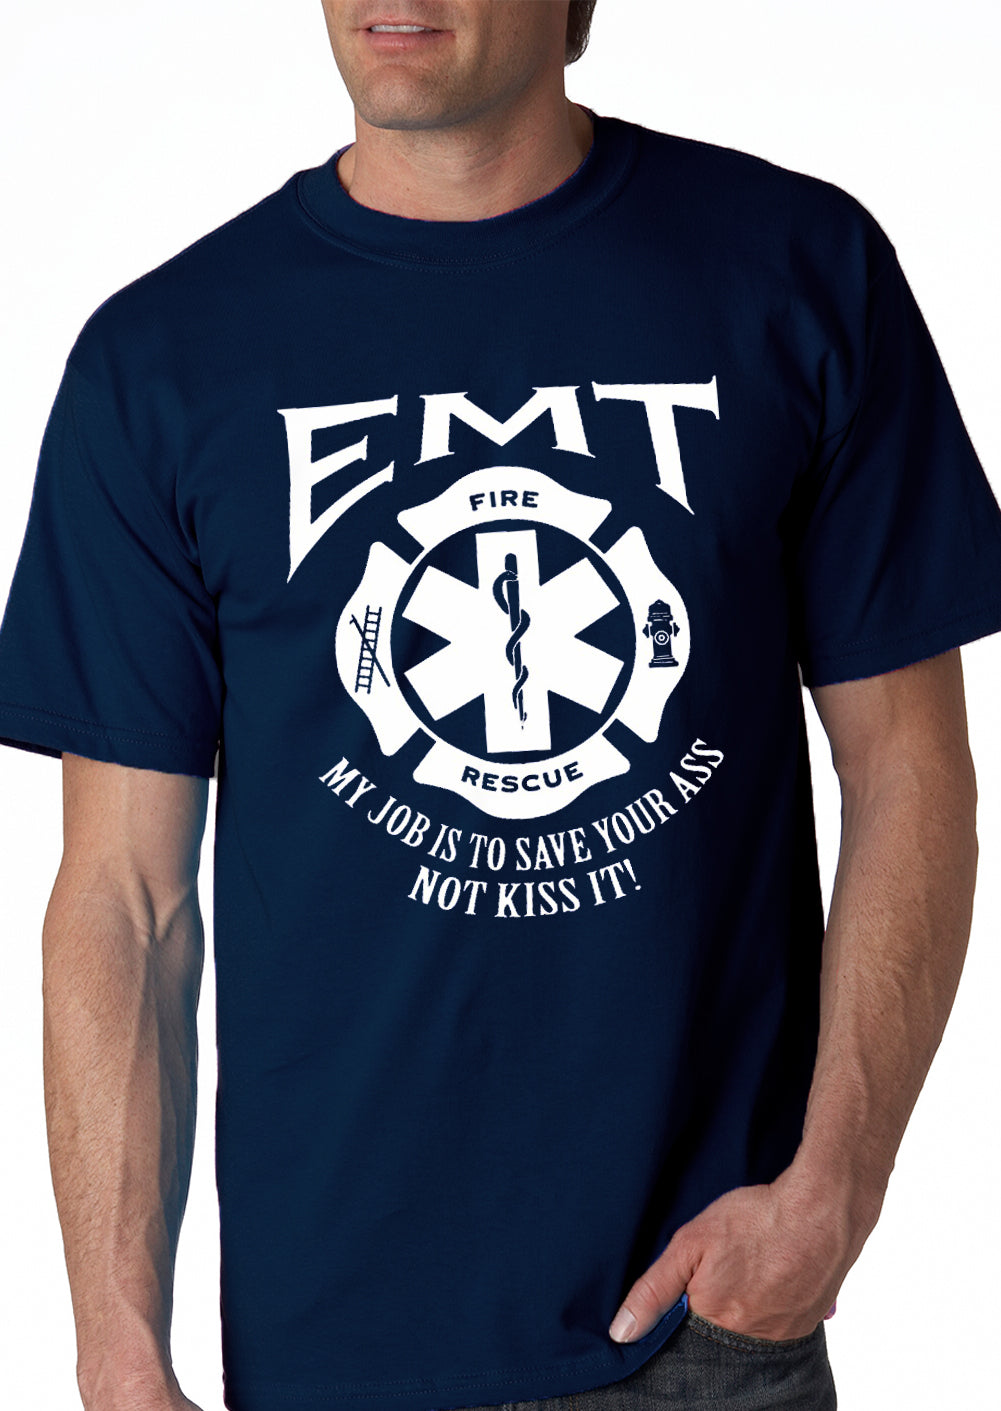 EMT - Emergency Medical Technicians Save Your Ass T-Shirt